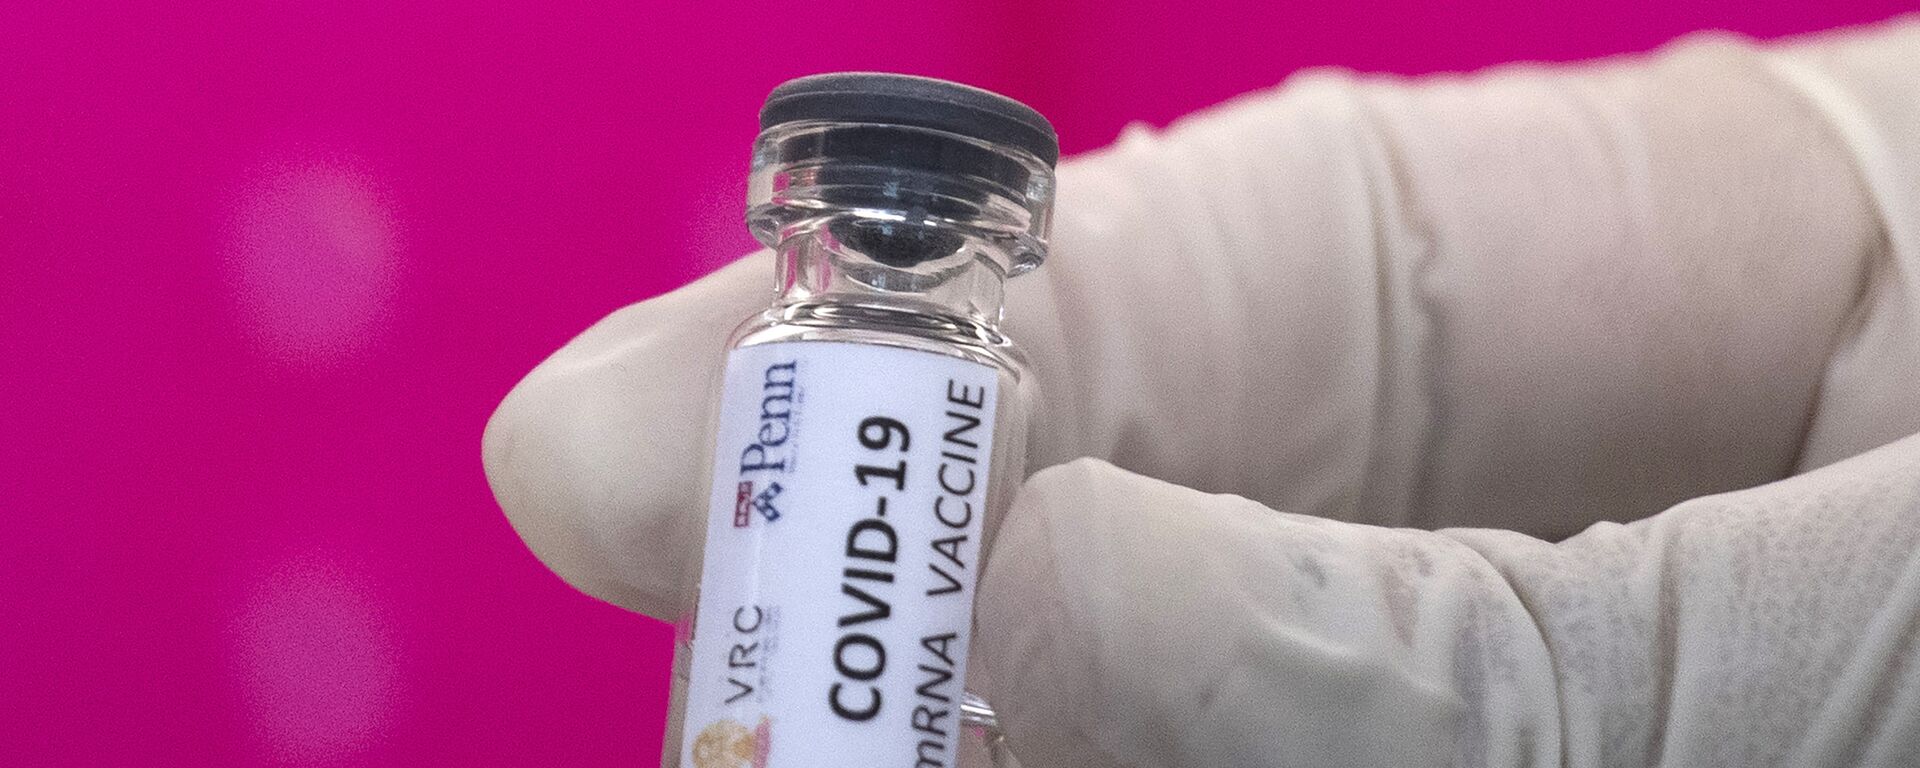 Вакцина от COVID-19 во время тестирования в исследовательском центре вакцин - Sputnik Արմենիա, 1920, 02.03.2021